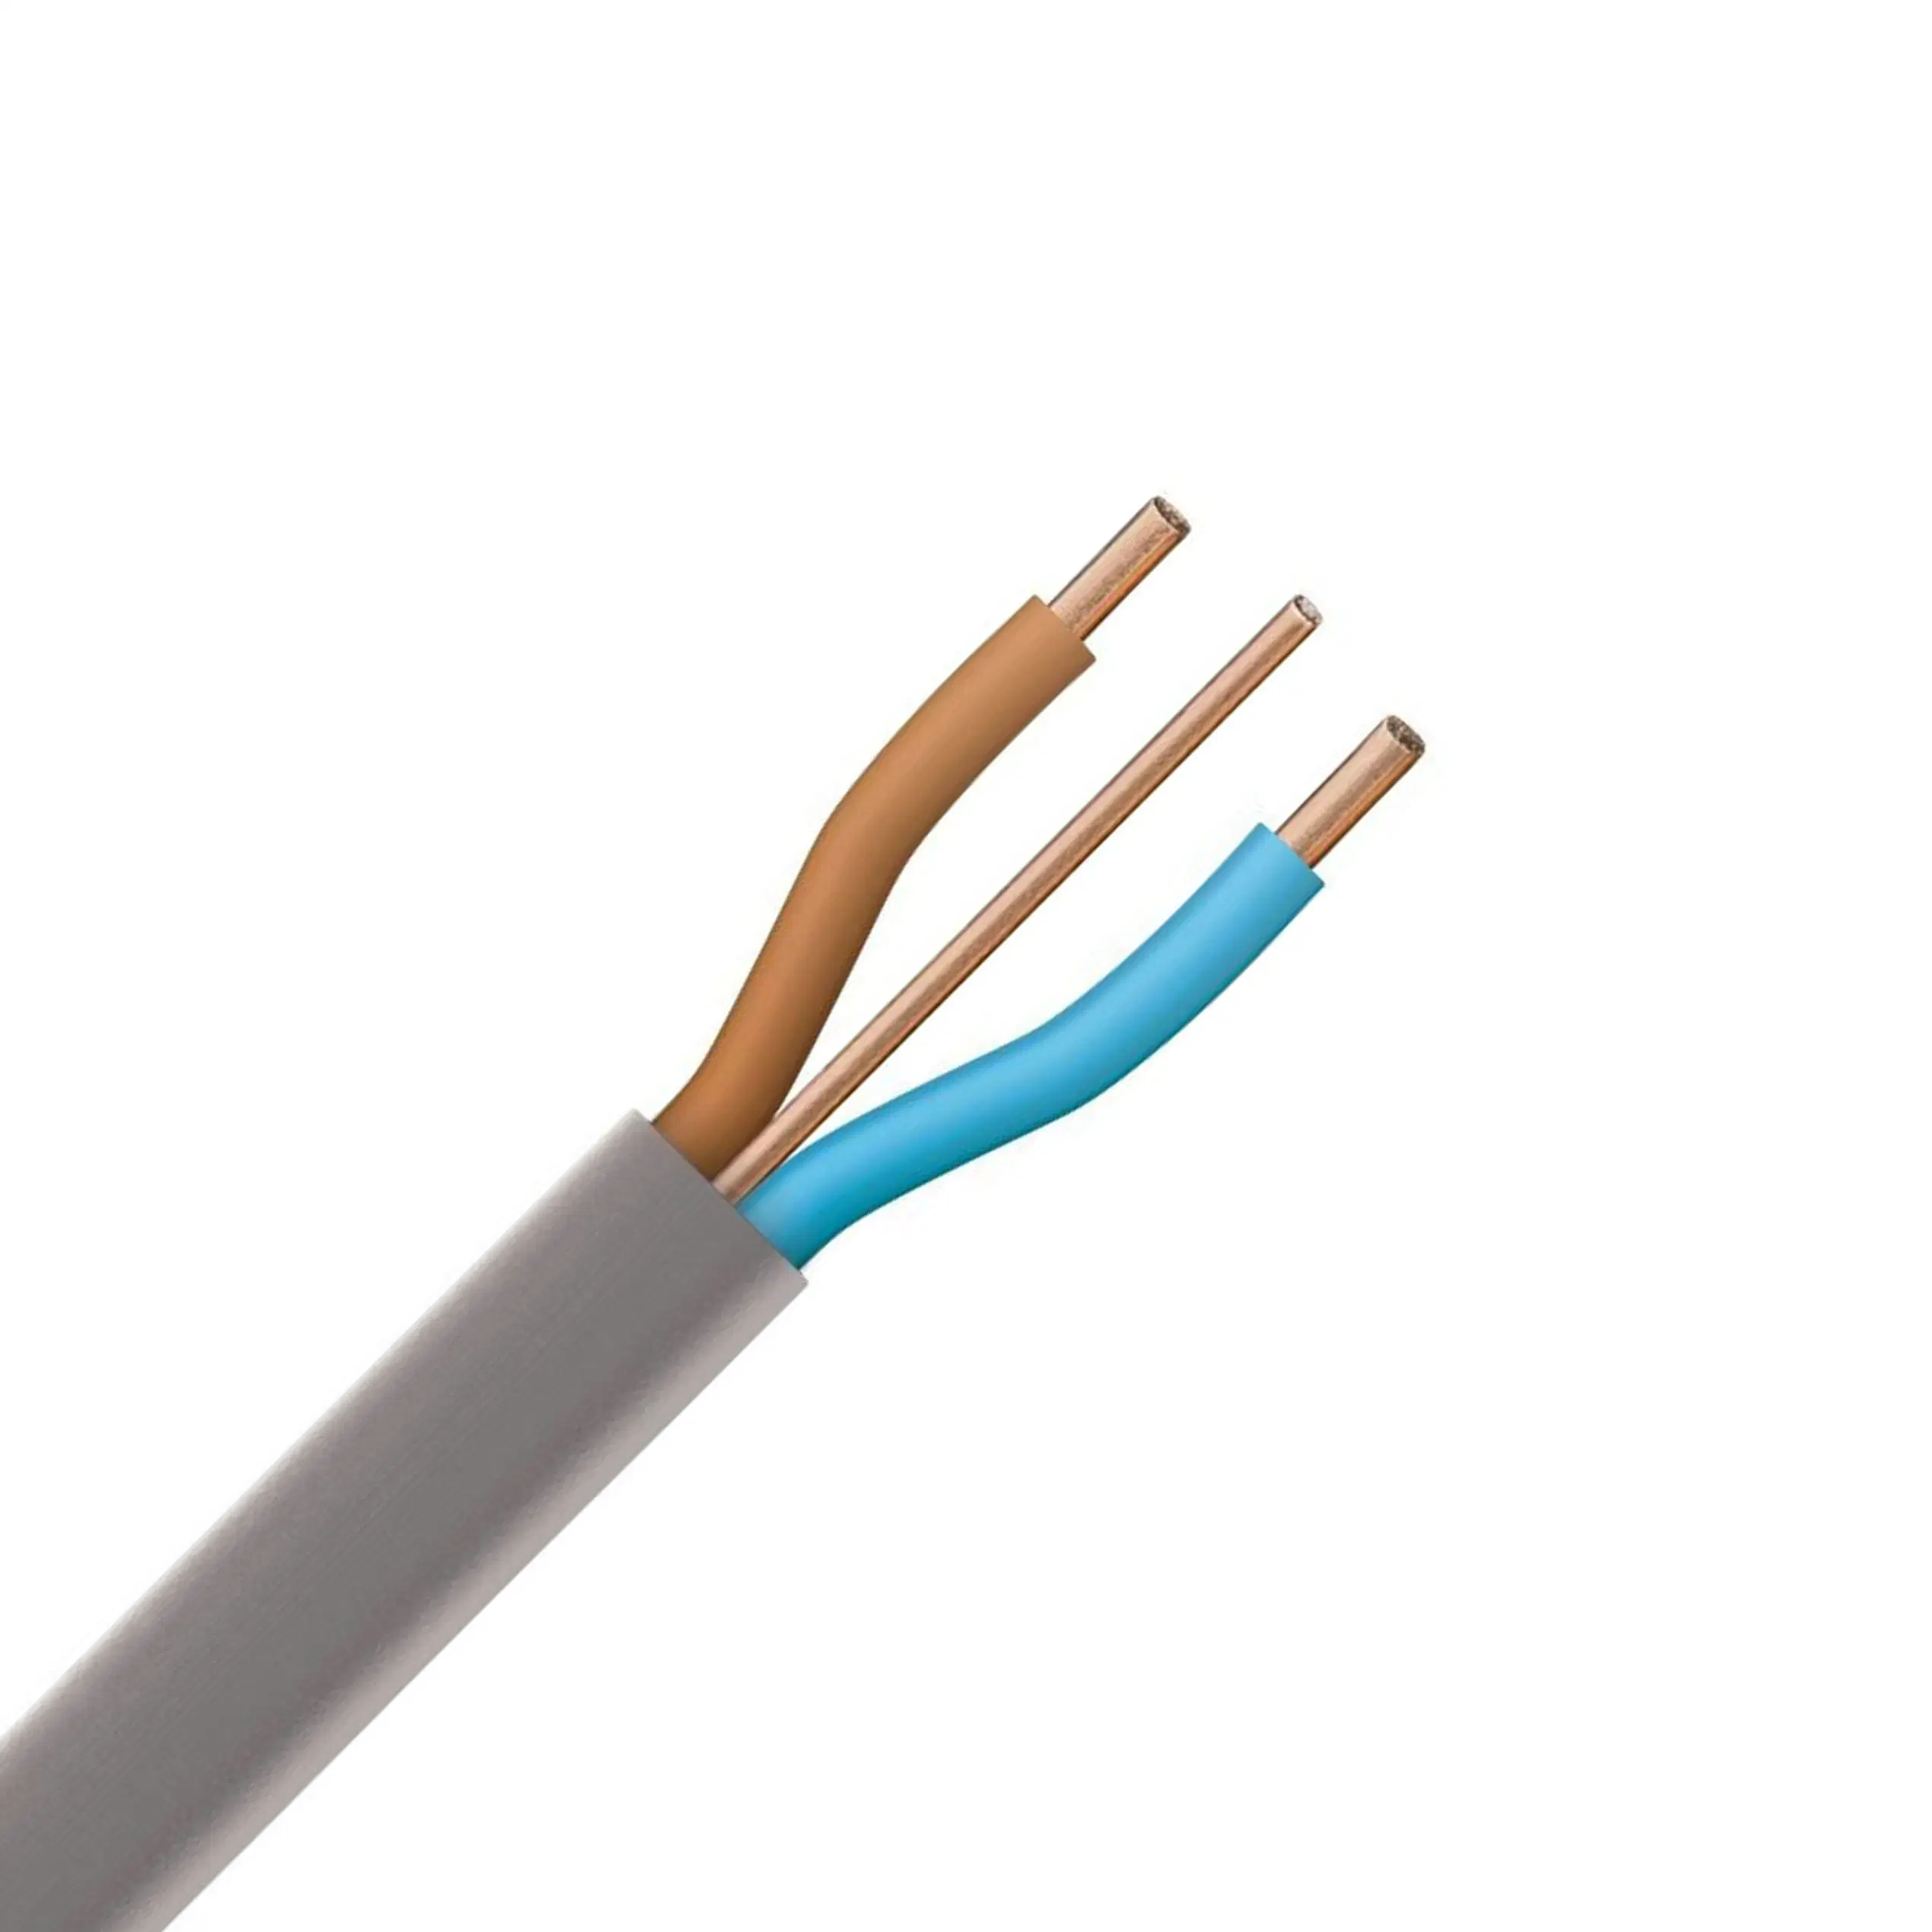 Плоские парные и массы 6242y-кабеля согласно спецификации серого цвета